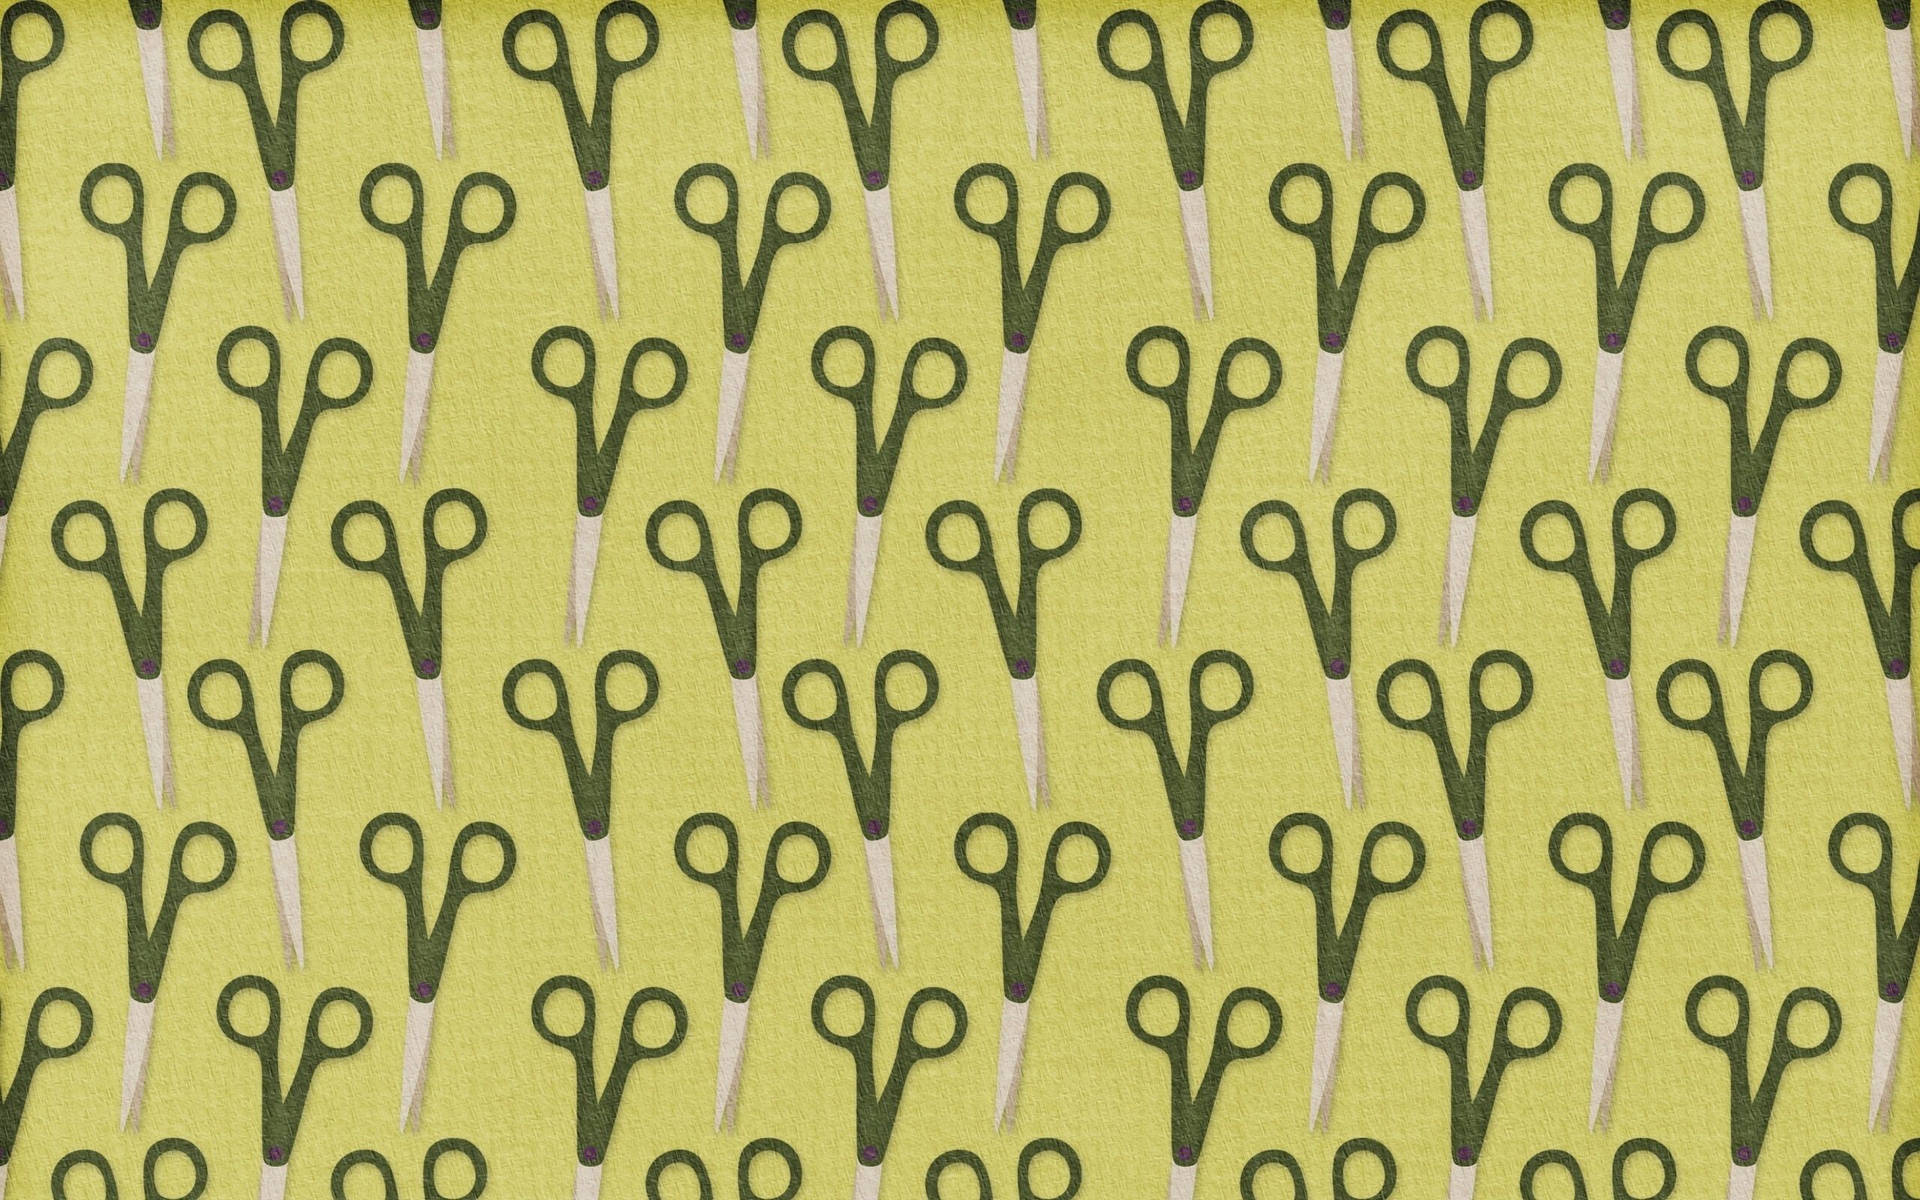 Green scissors in pattern image wallpaper.